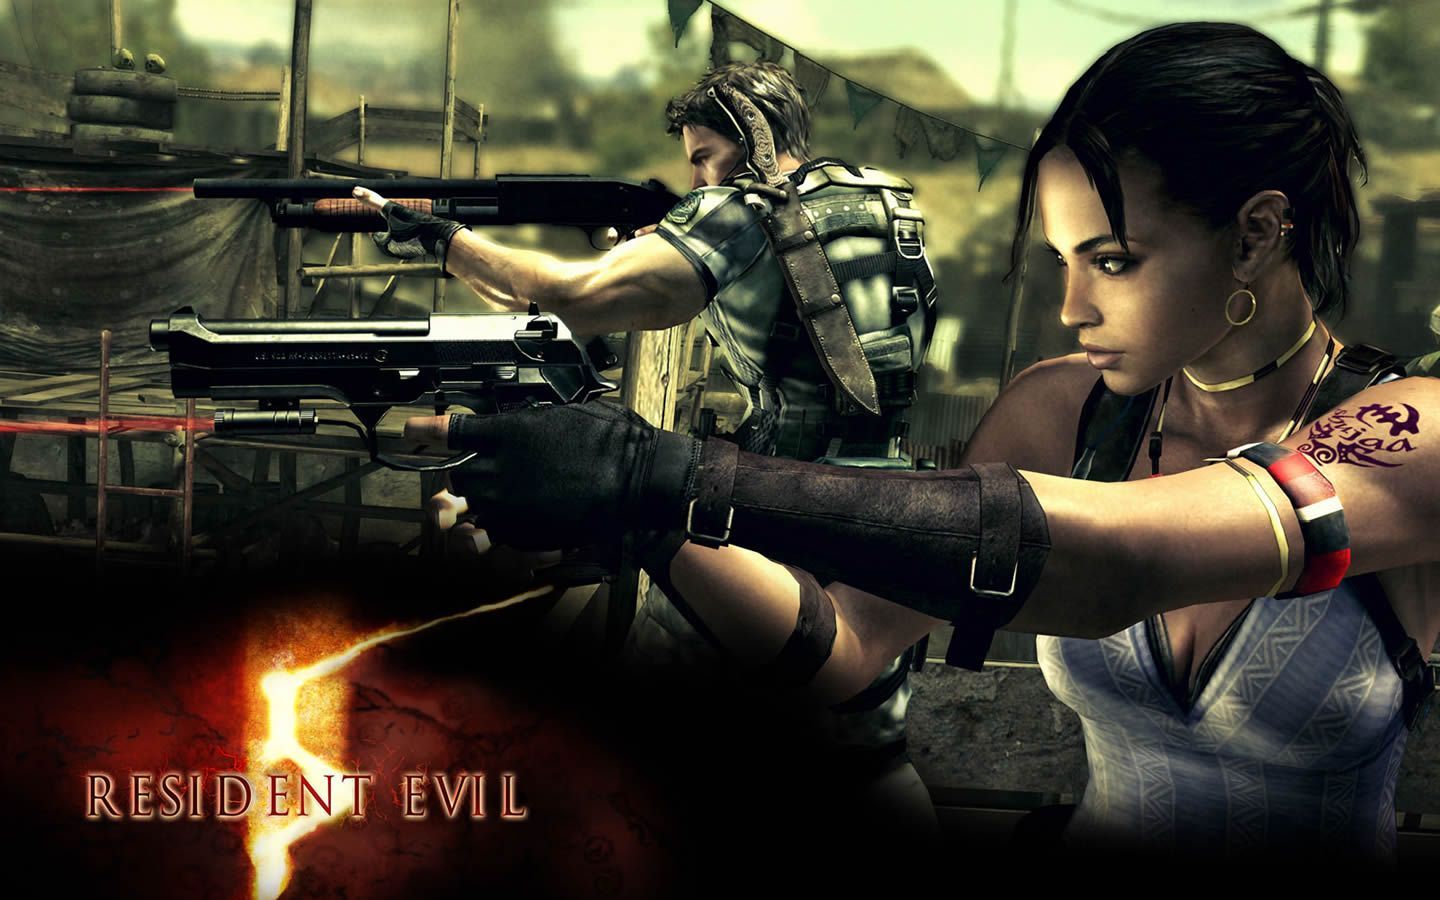 Sheva Alomar Wallpaper: Sheva Alomar Wallpaper. Resident Evil Resident Evil, Resident Evil Game